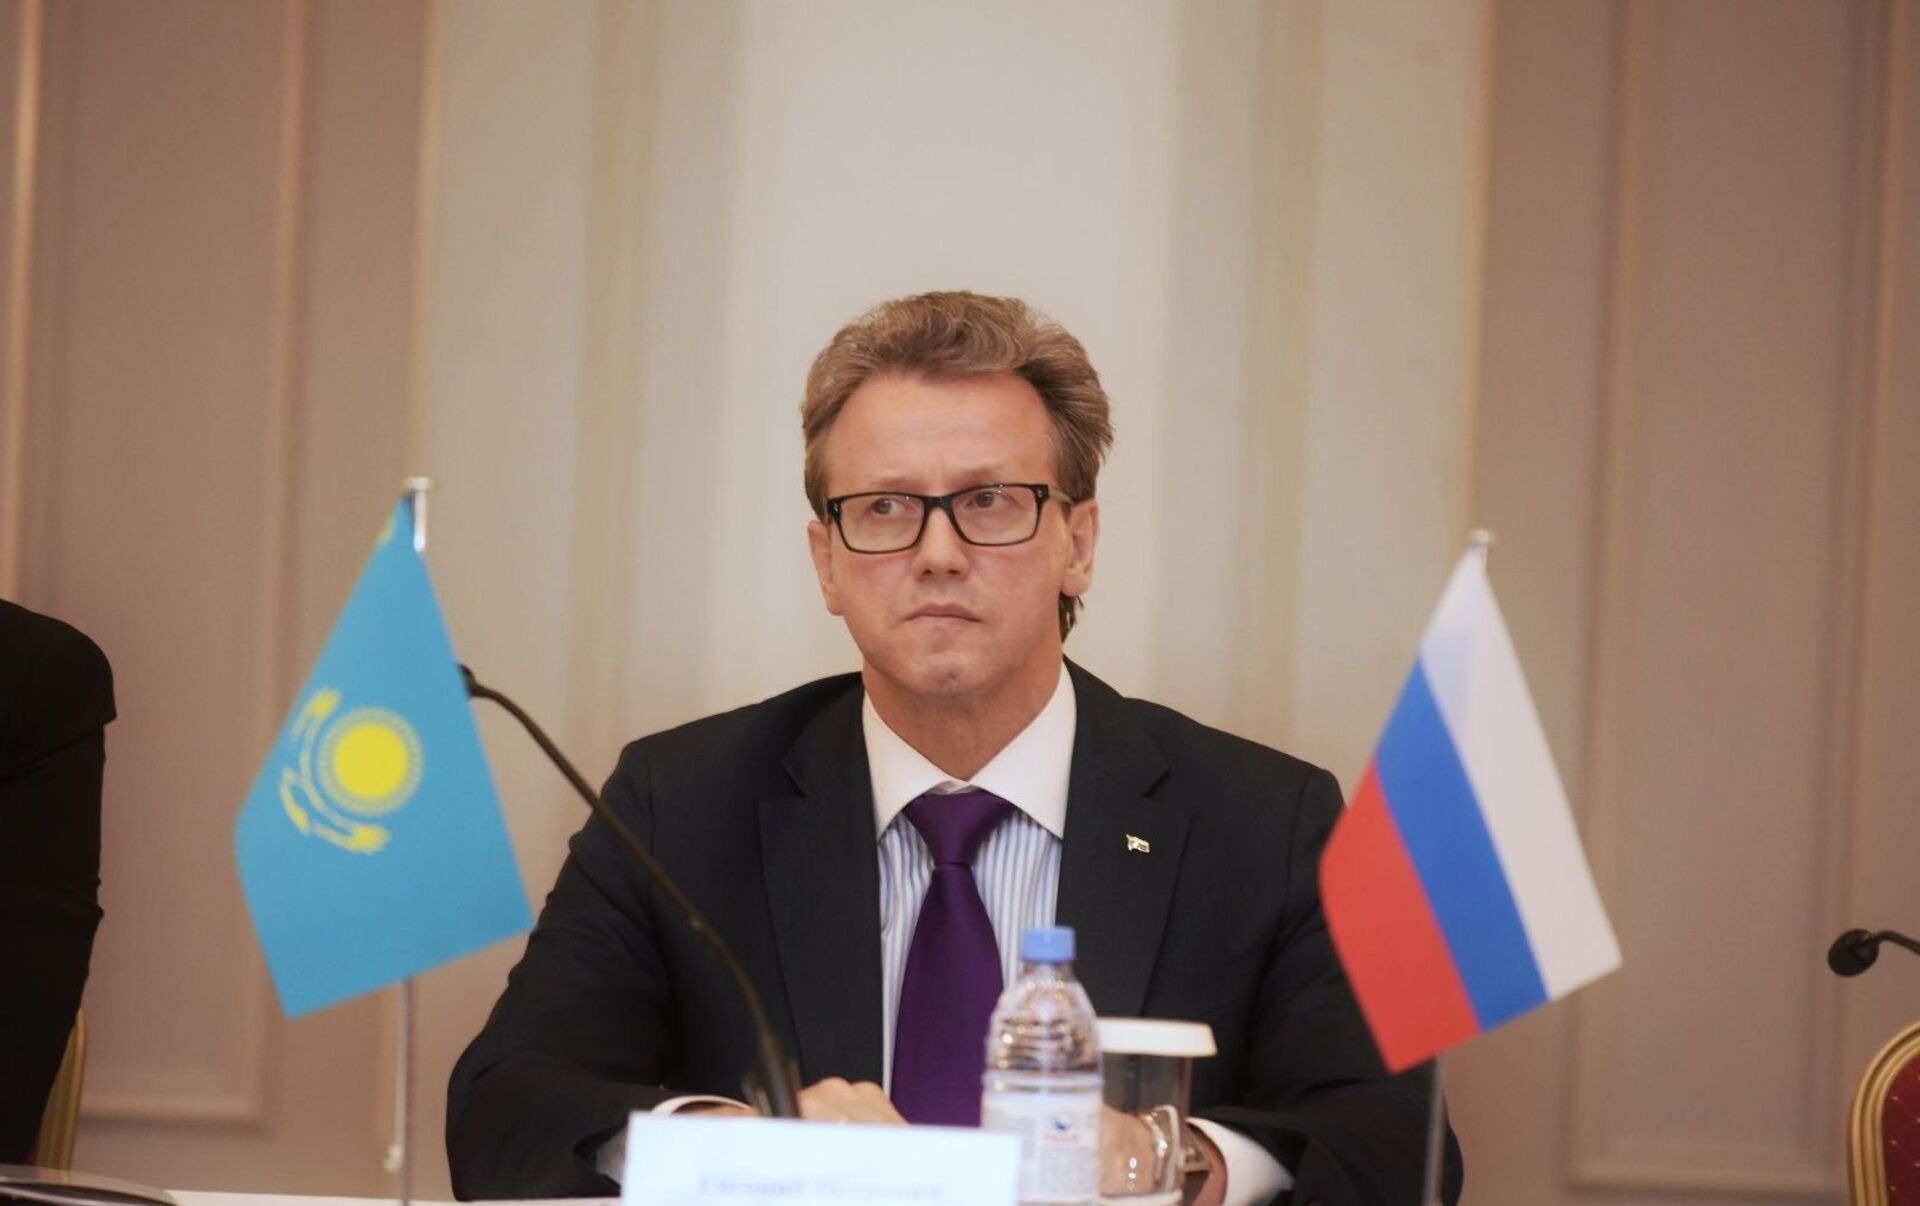 Ищи кому выгодно: очередной ход Казахстана не оставил шансов на дружбу с Россией